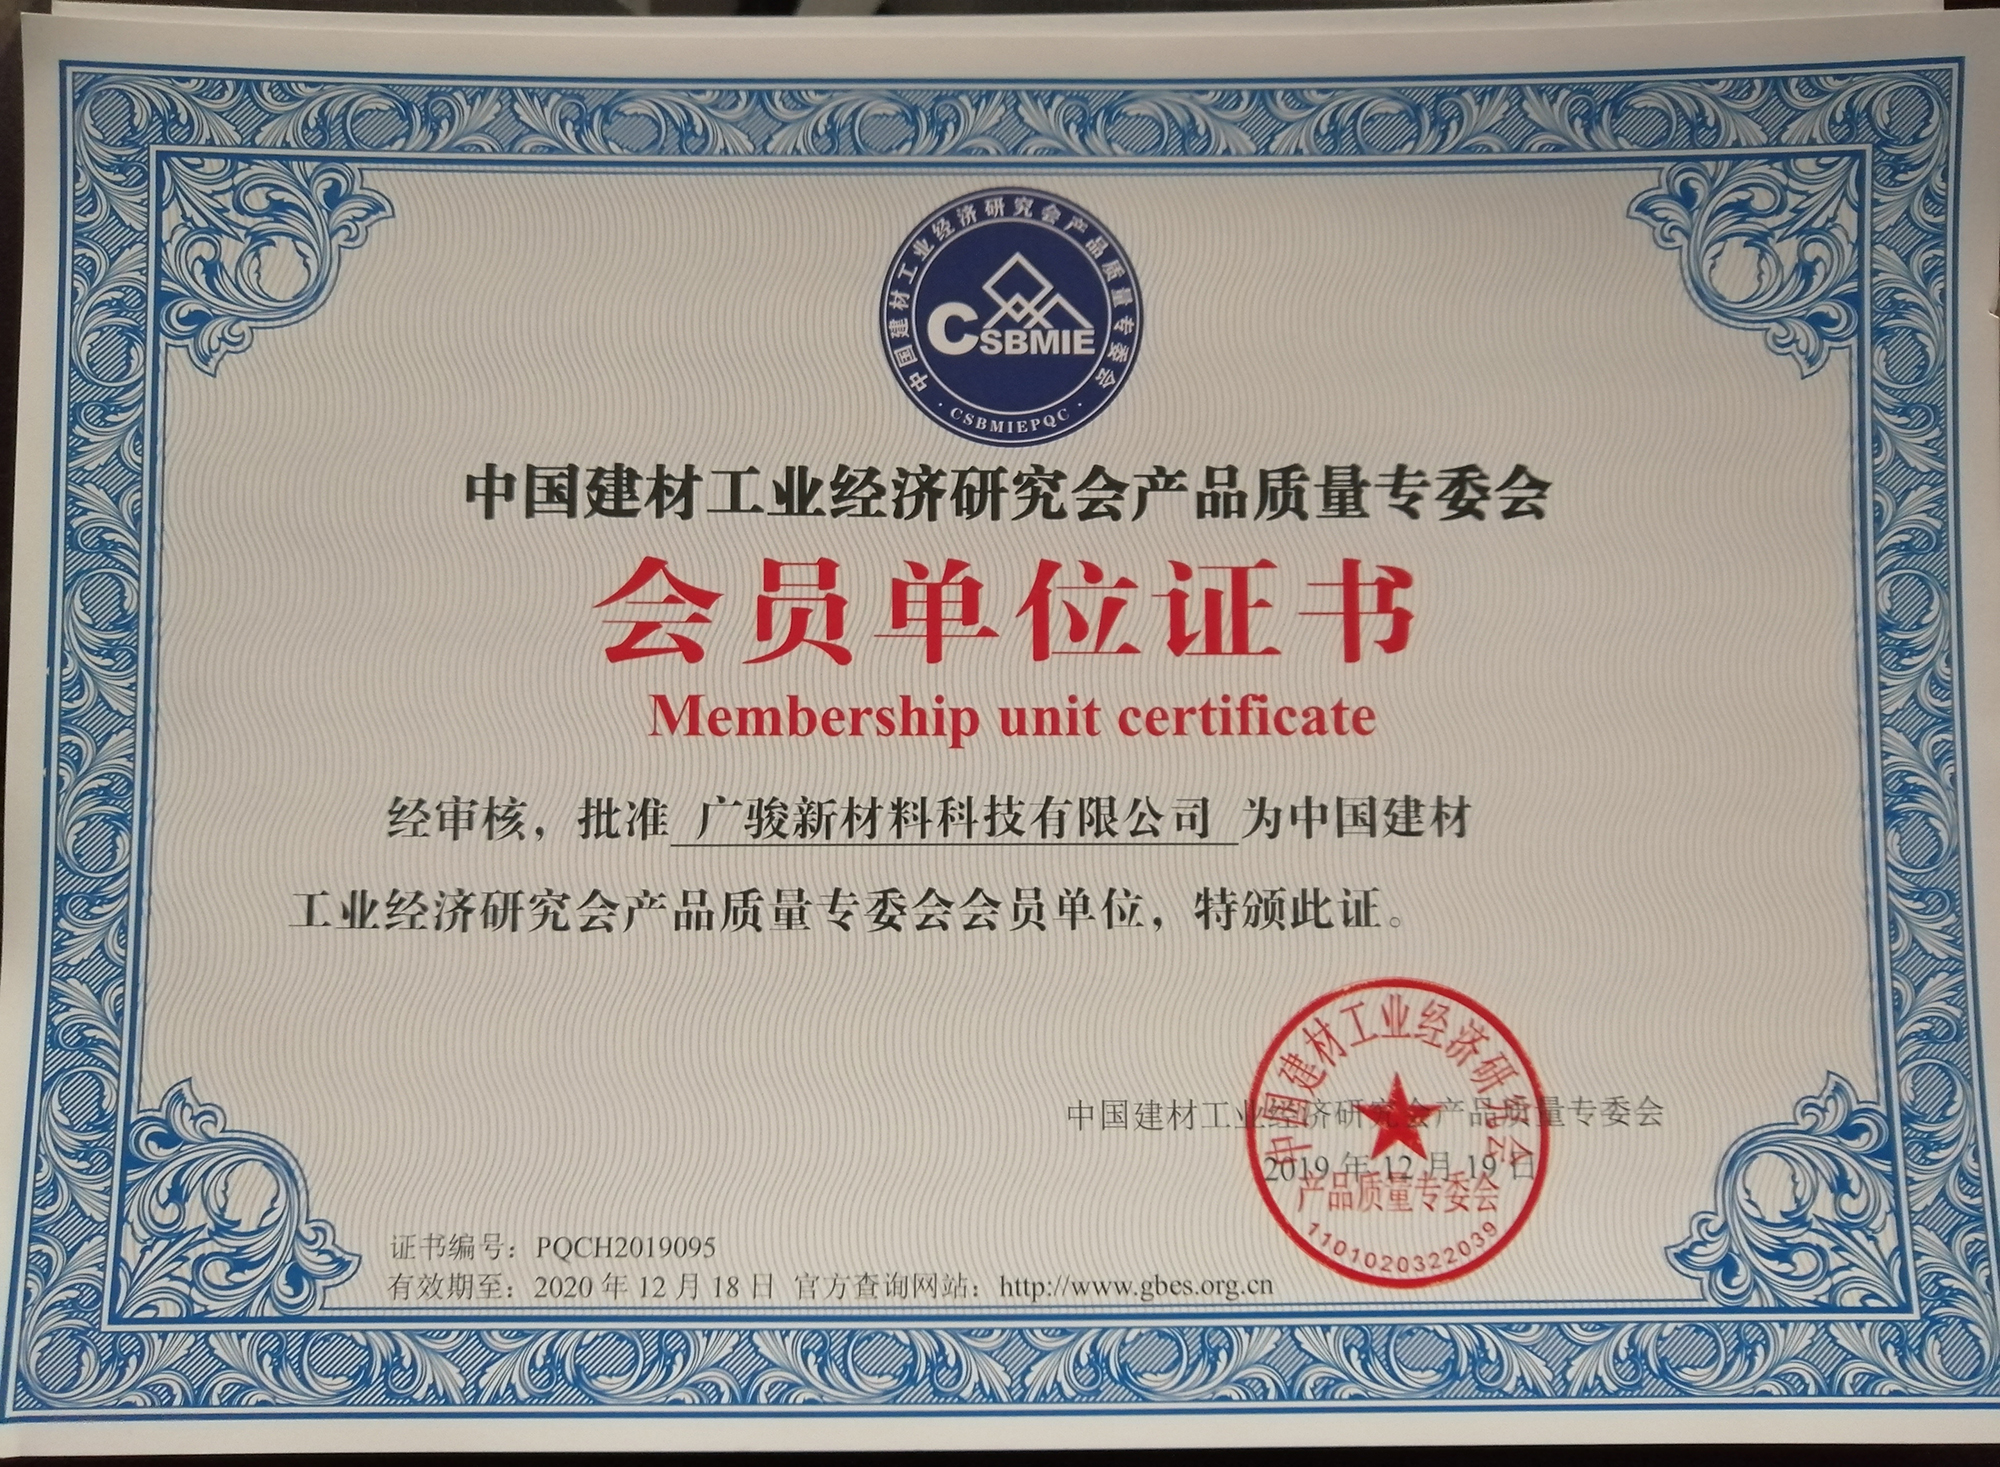 中国建材工业经济研究会产品质量证书-1.jpg